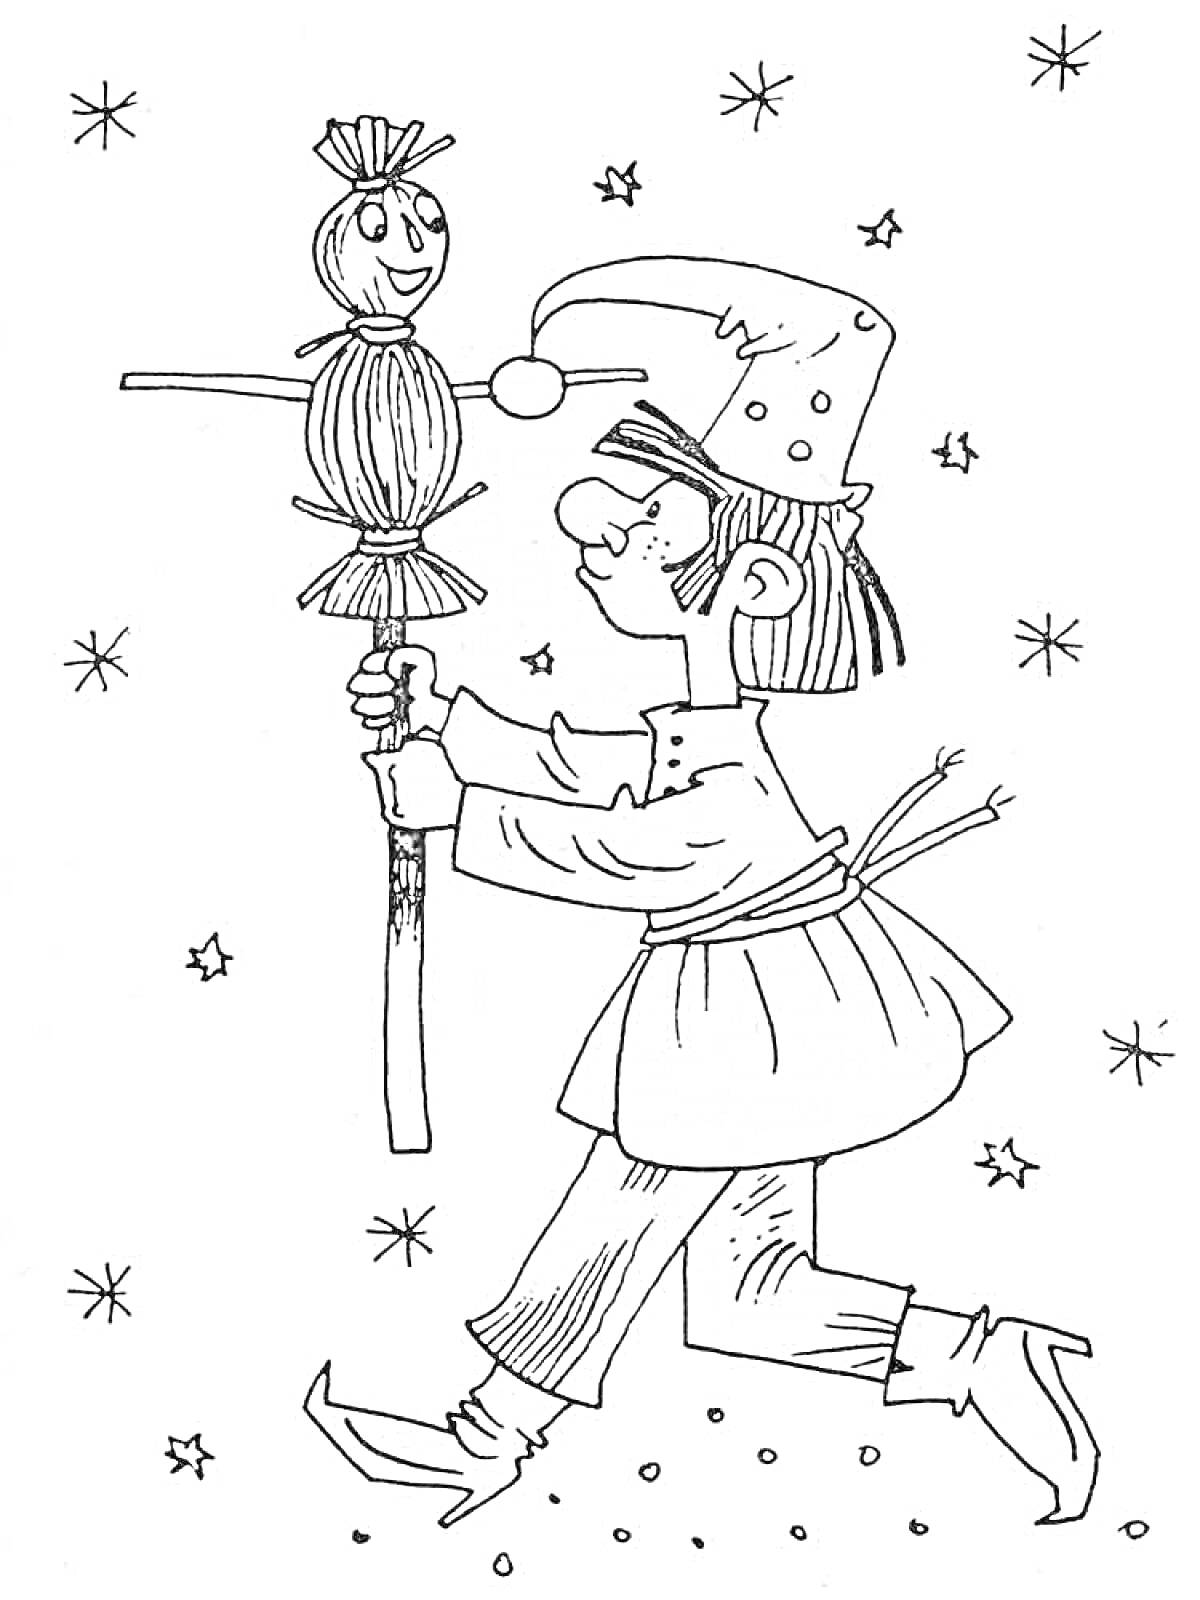 Раскраска Человек в традиционной одежде с куклой Масленицы на палке, фон со звездами